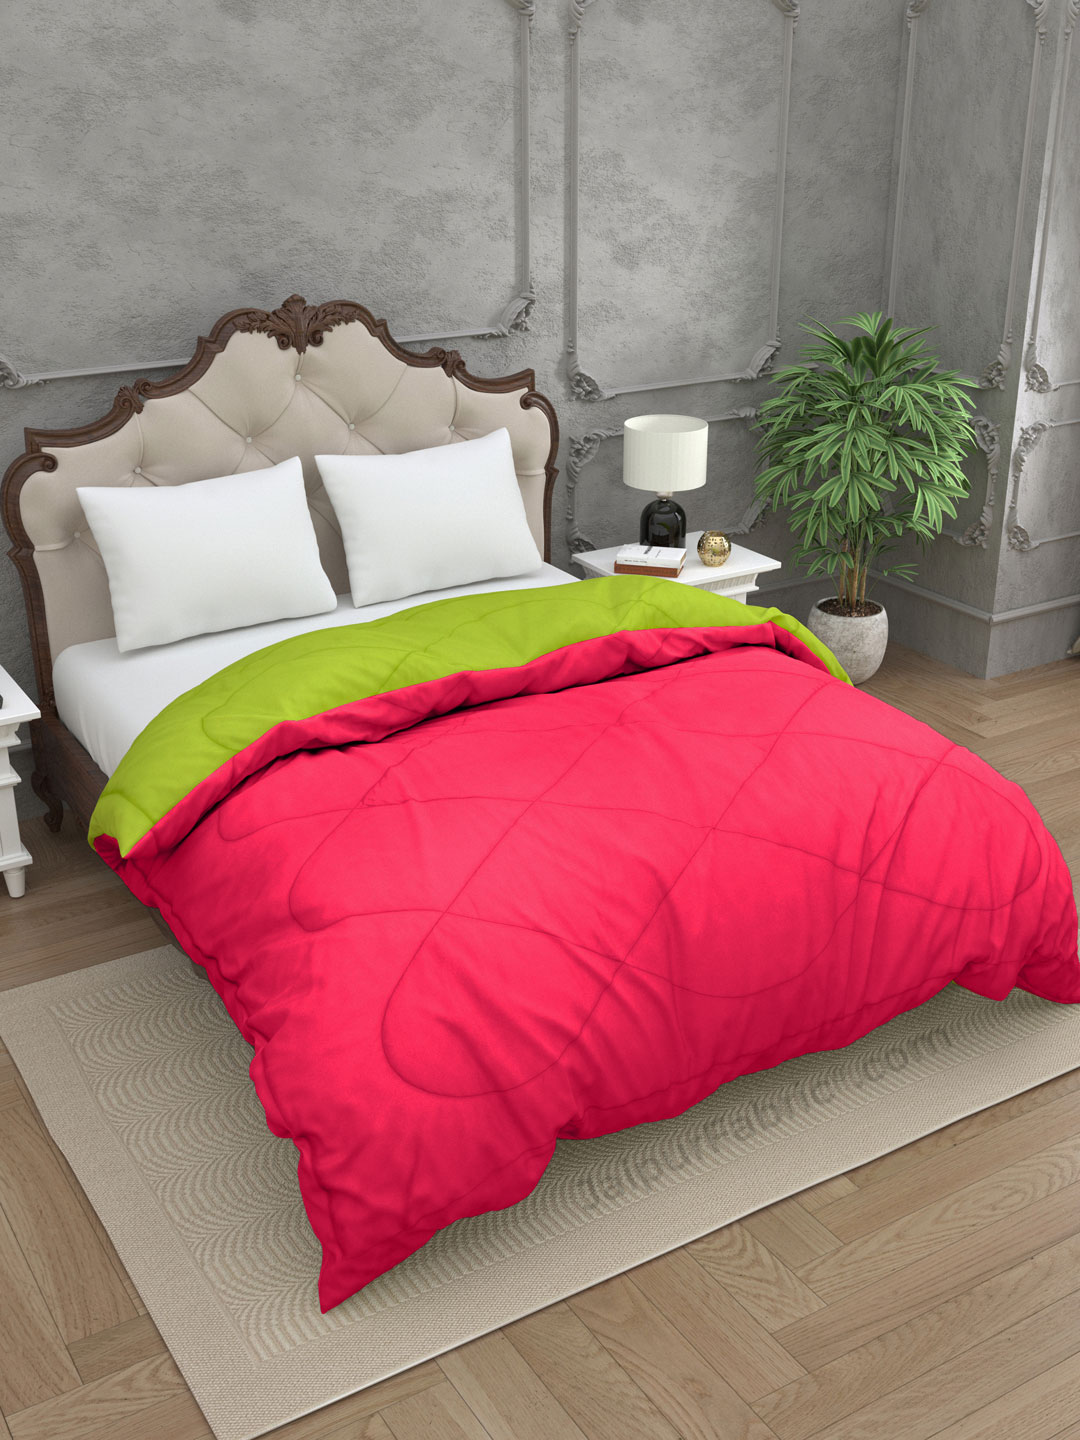 Lemon Green-Pink Double Bed Comforter